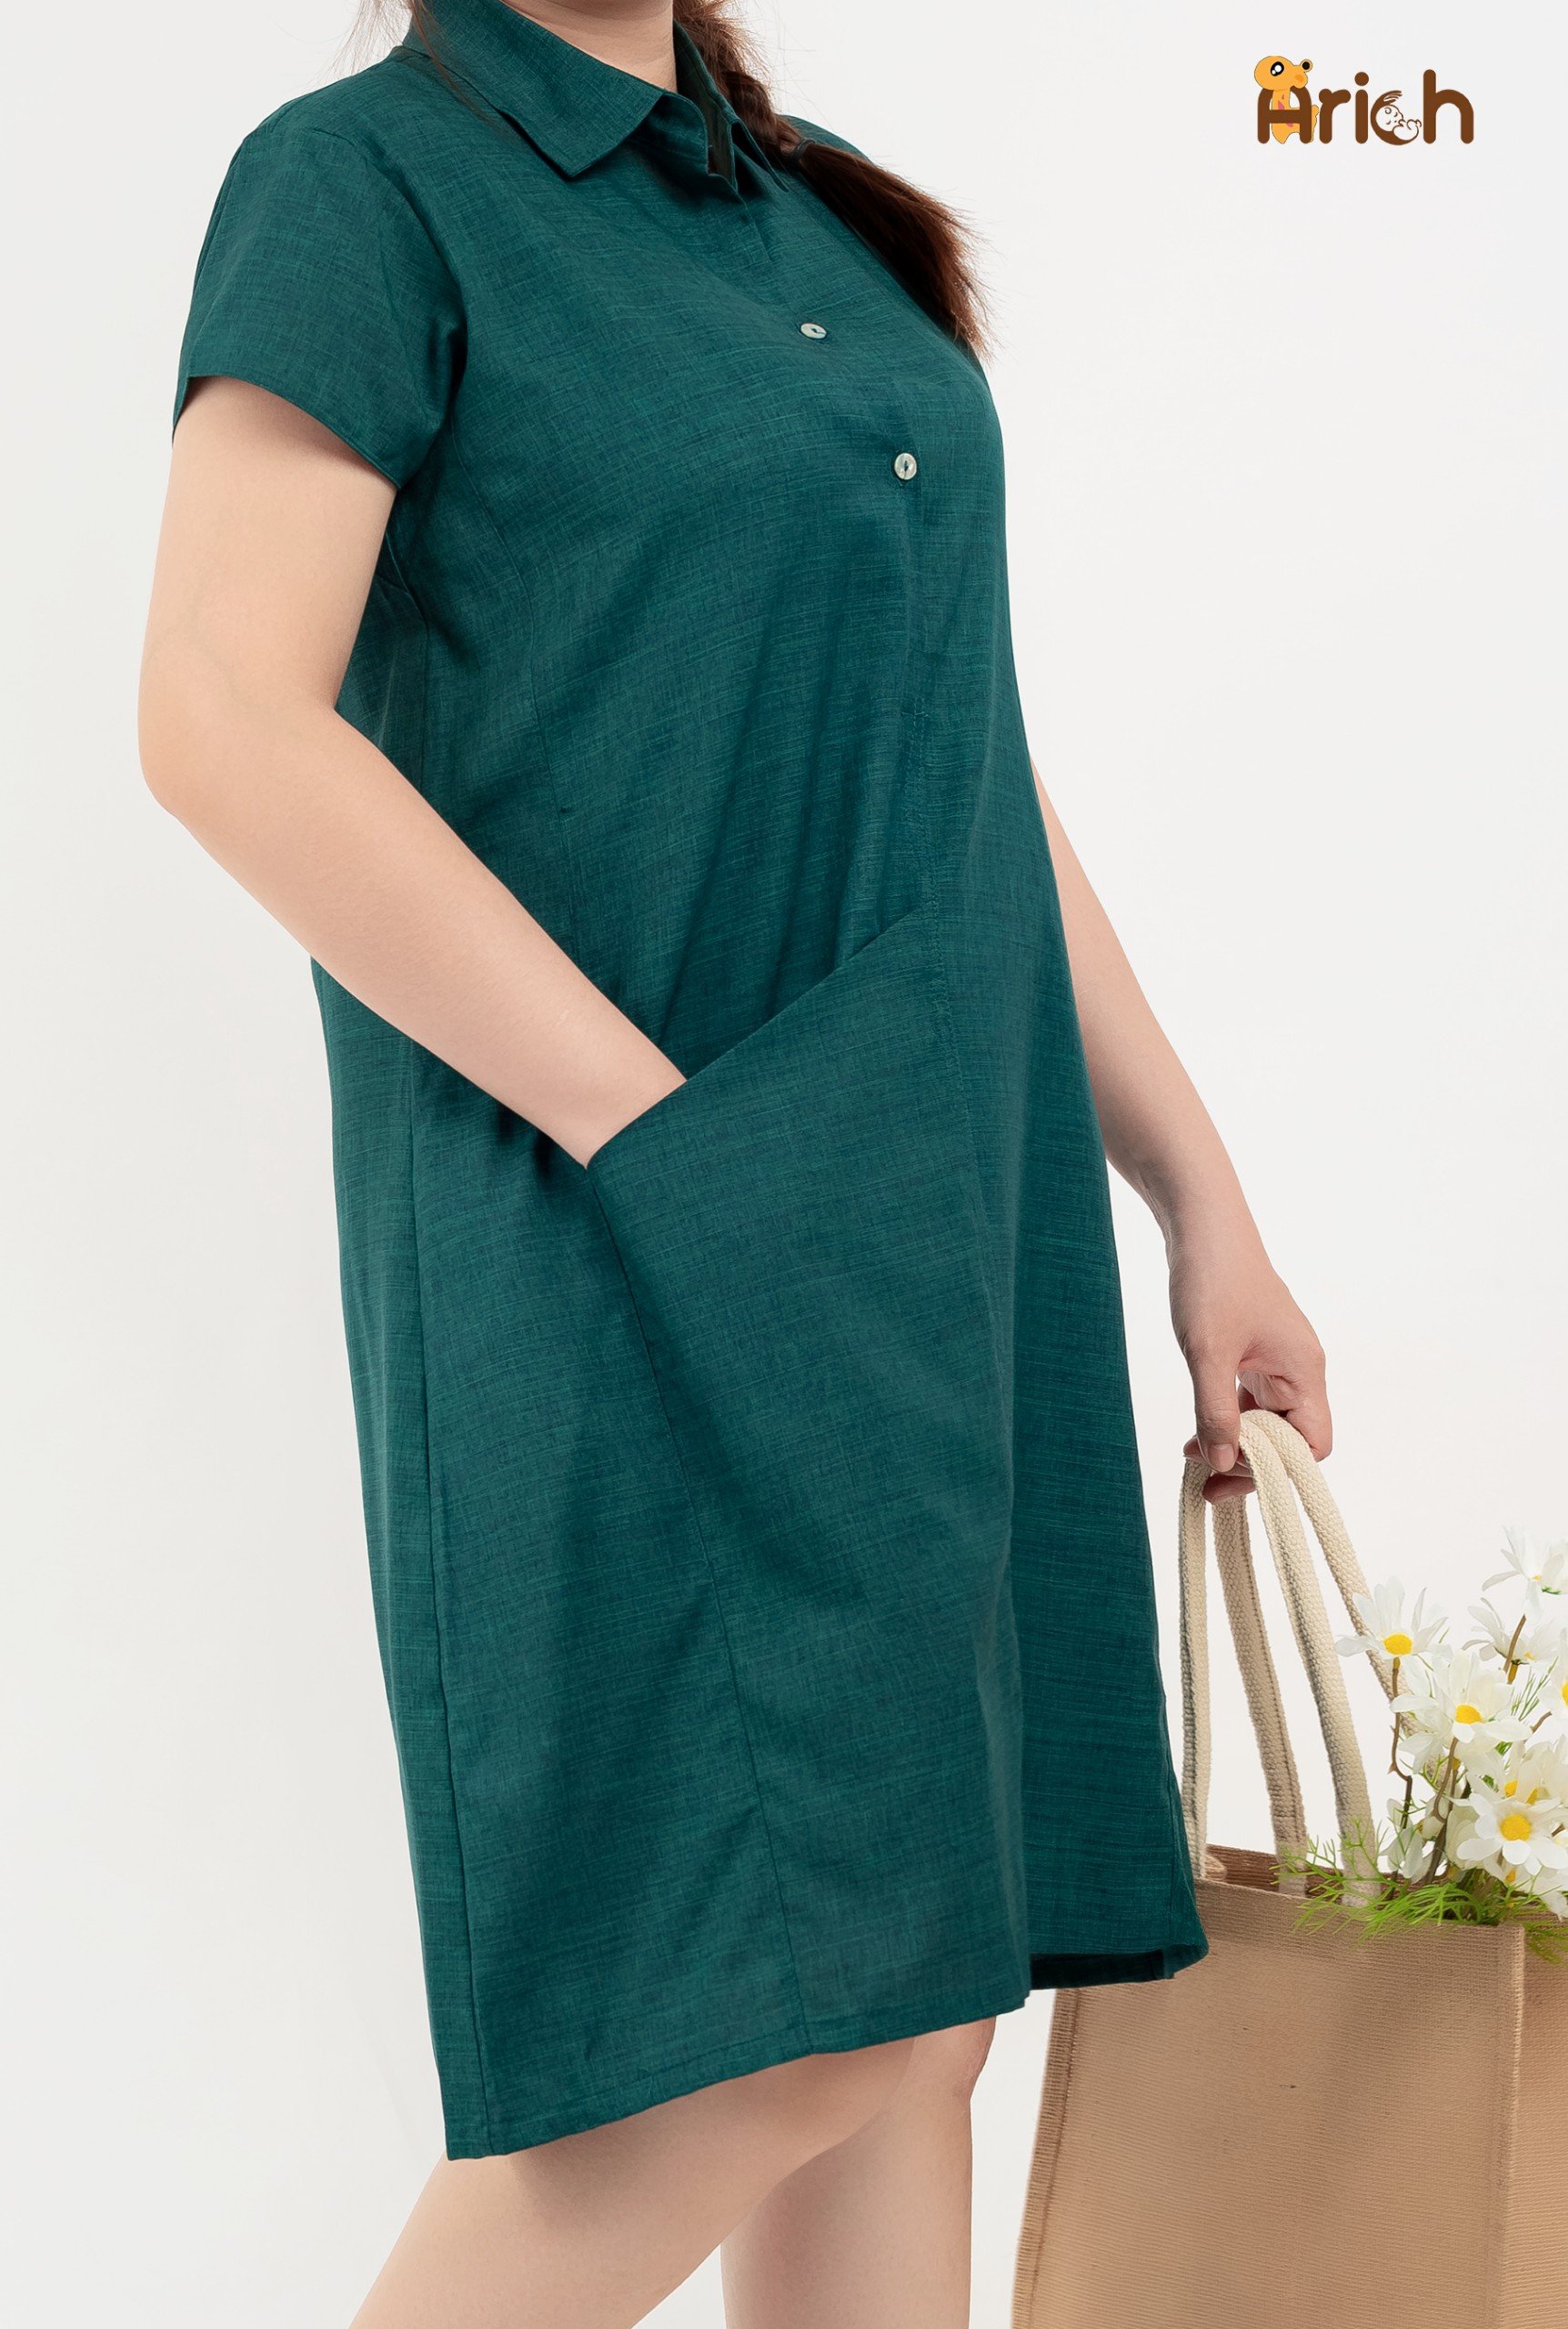 Đầm Linen sọc dáng dài maxi cao cấp - LiLi - Thời trang Linen